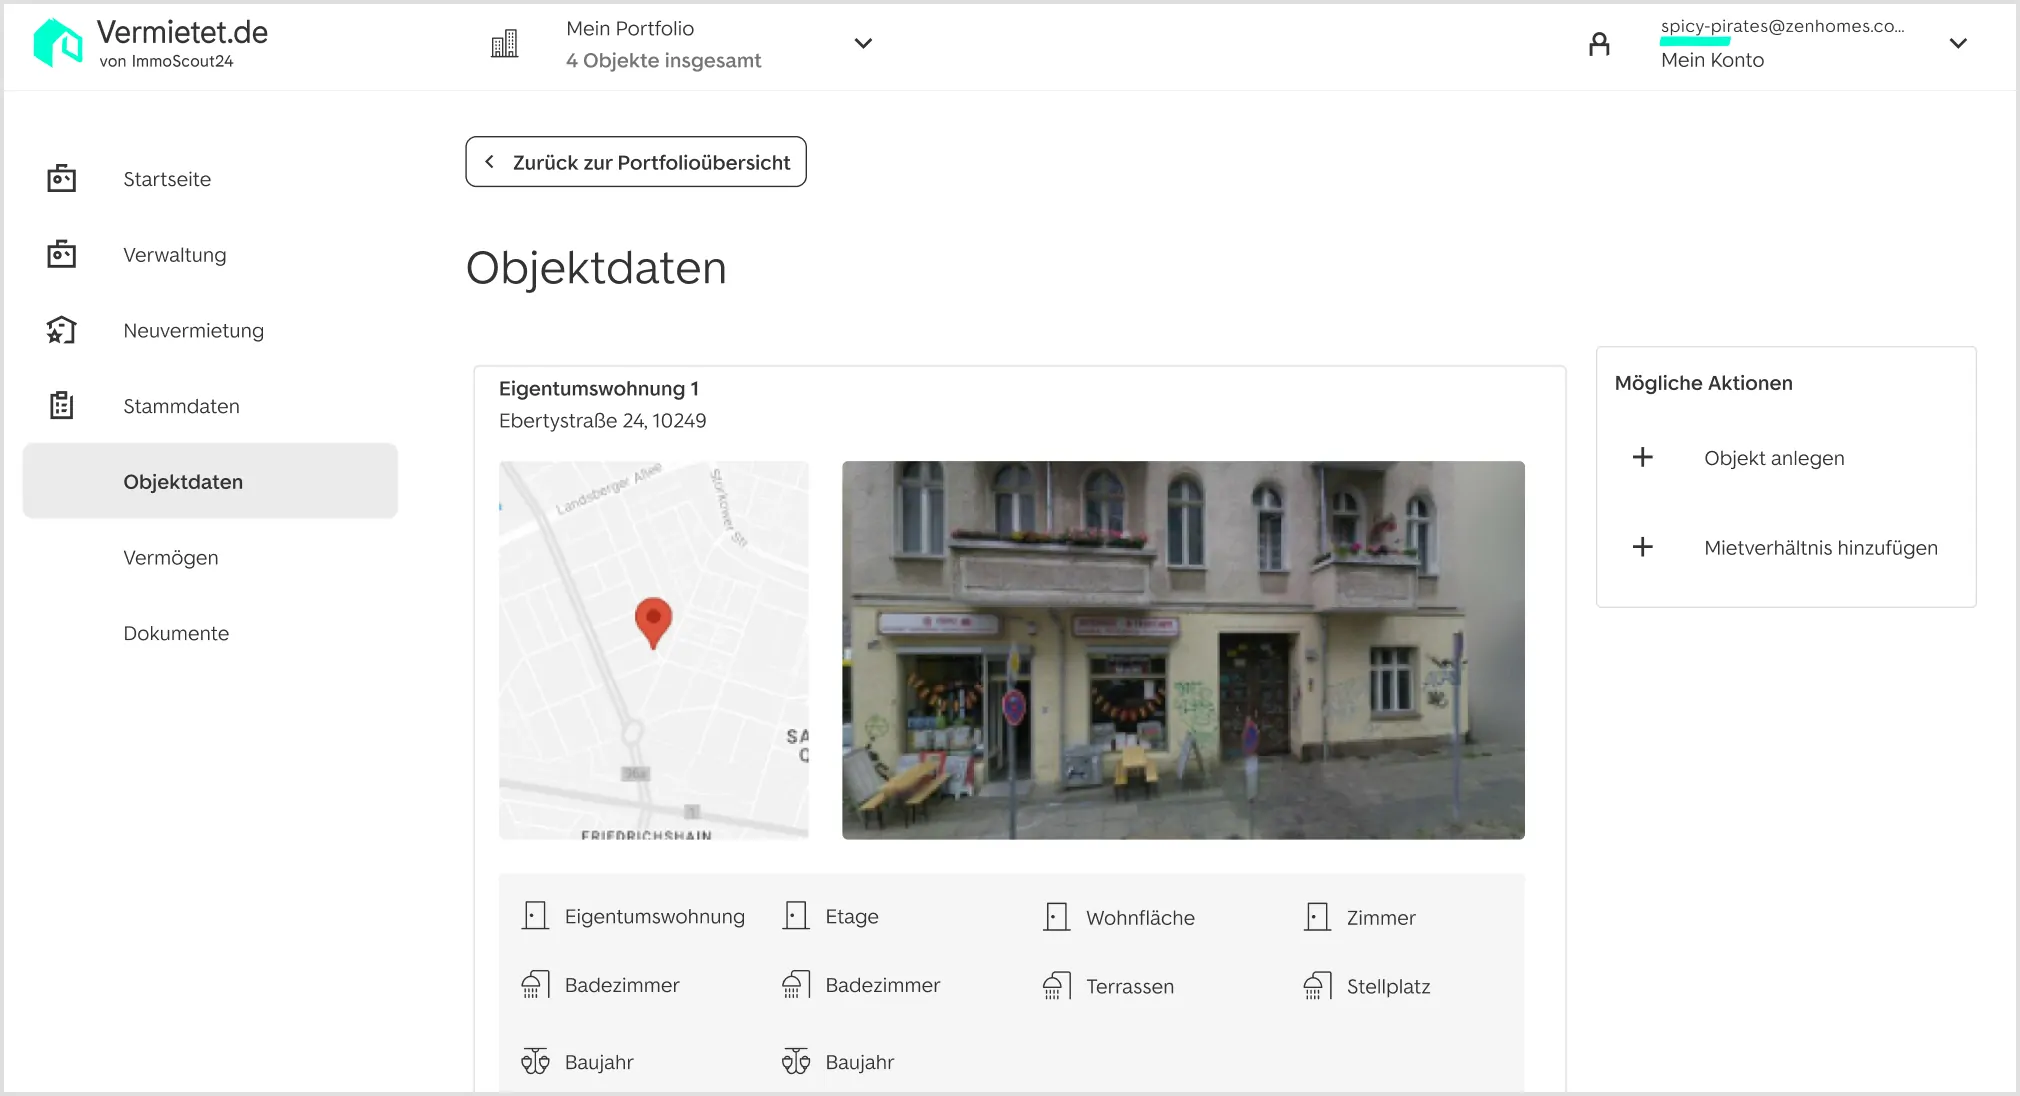 Screenshot der Vermietet.de Software auf welchem die Objektdaten inklusive Standort, Details sowie Bildern dargestellt sind.